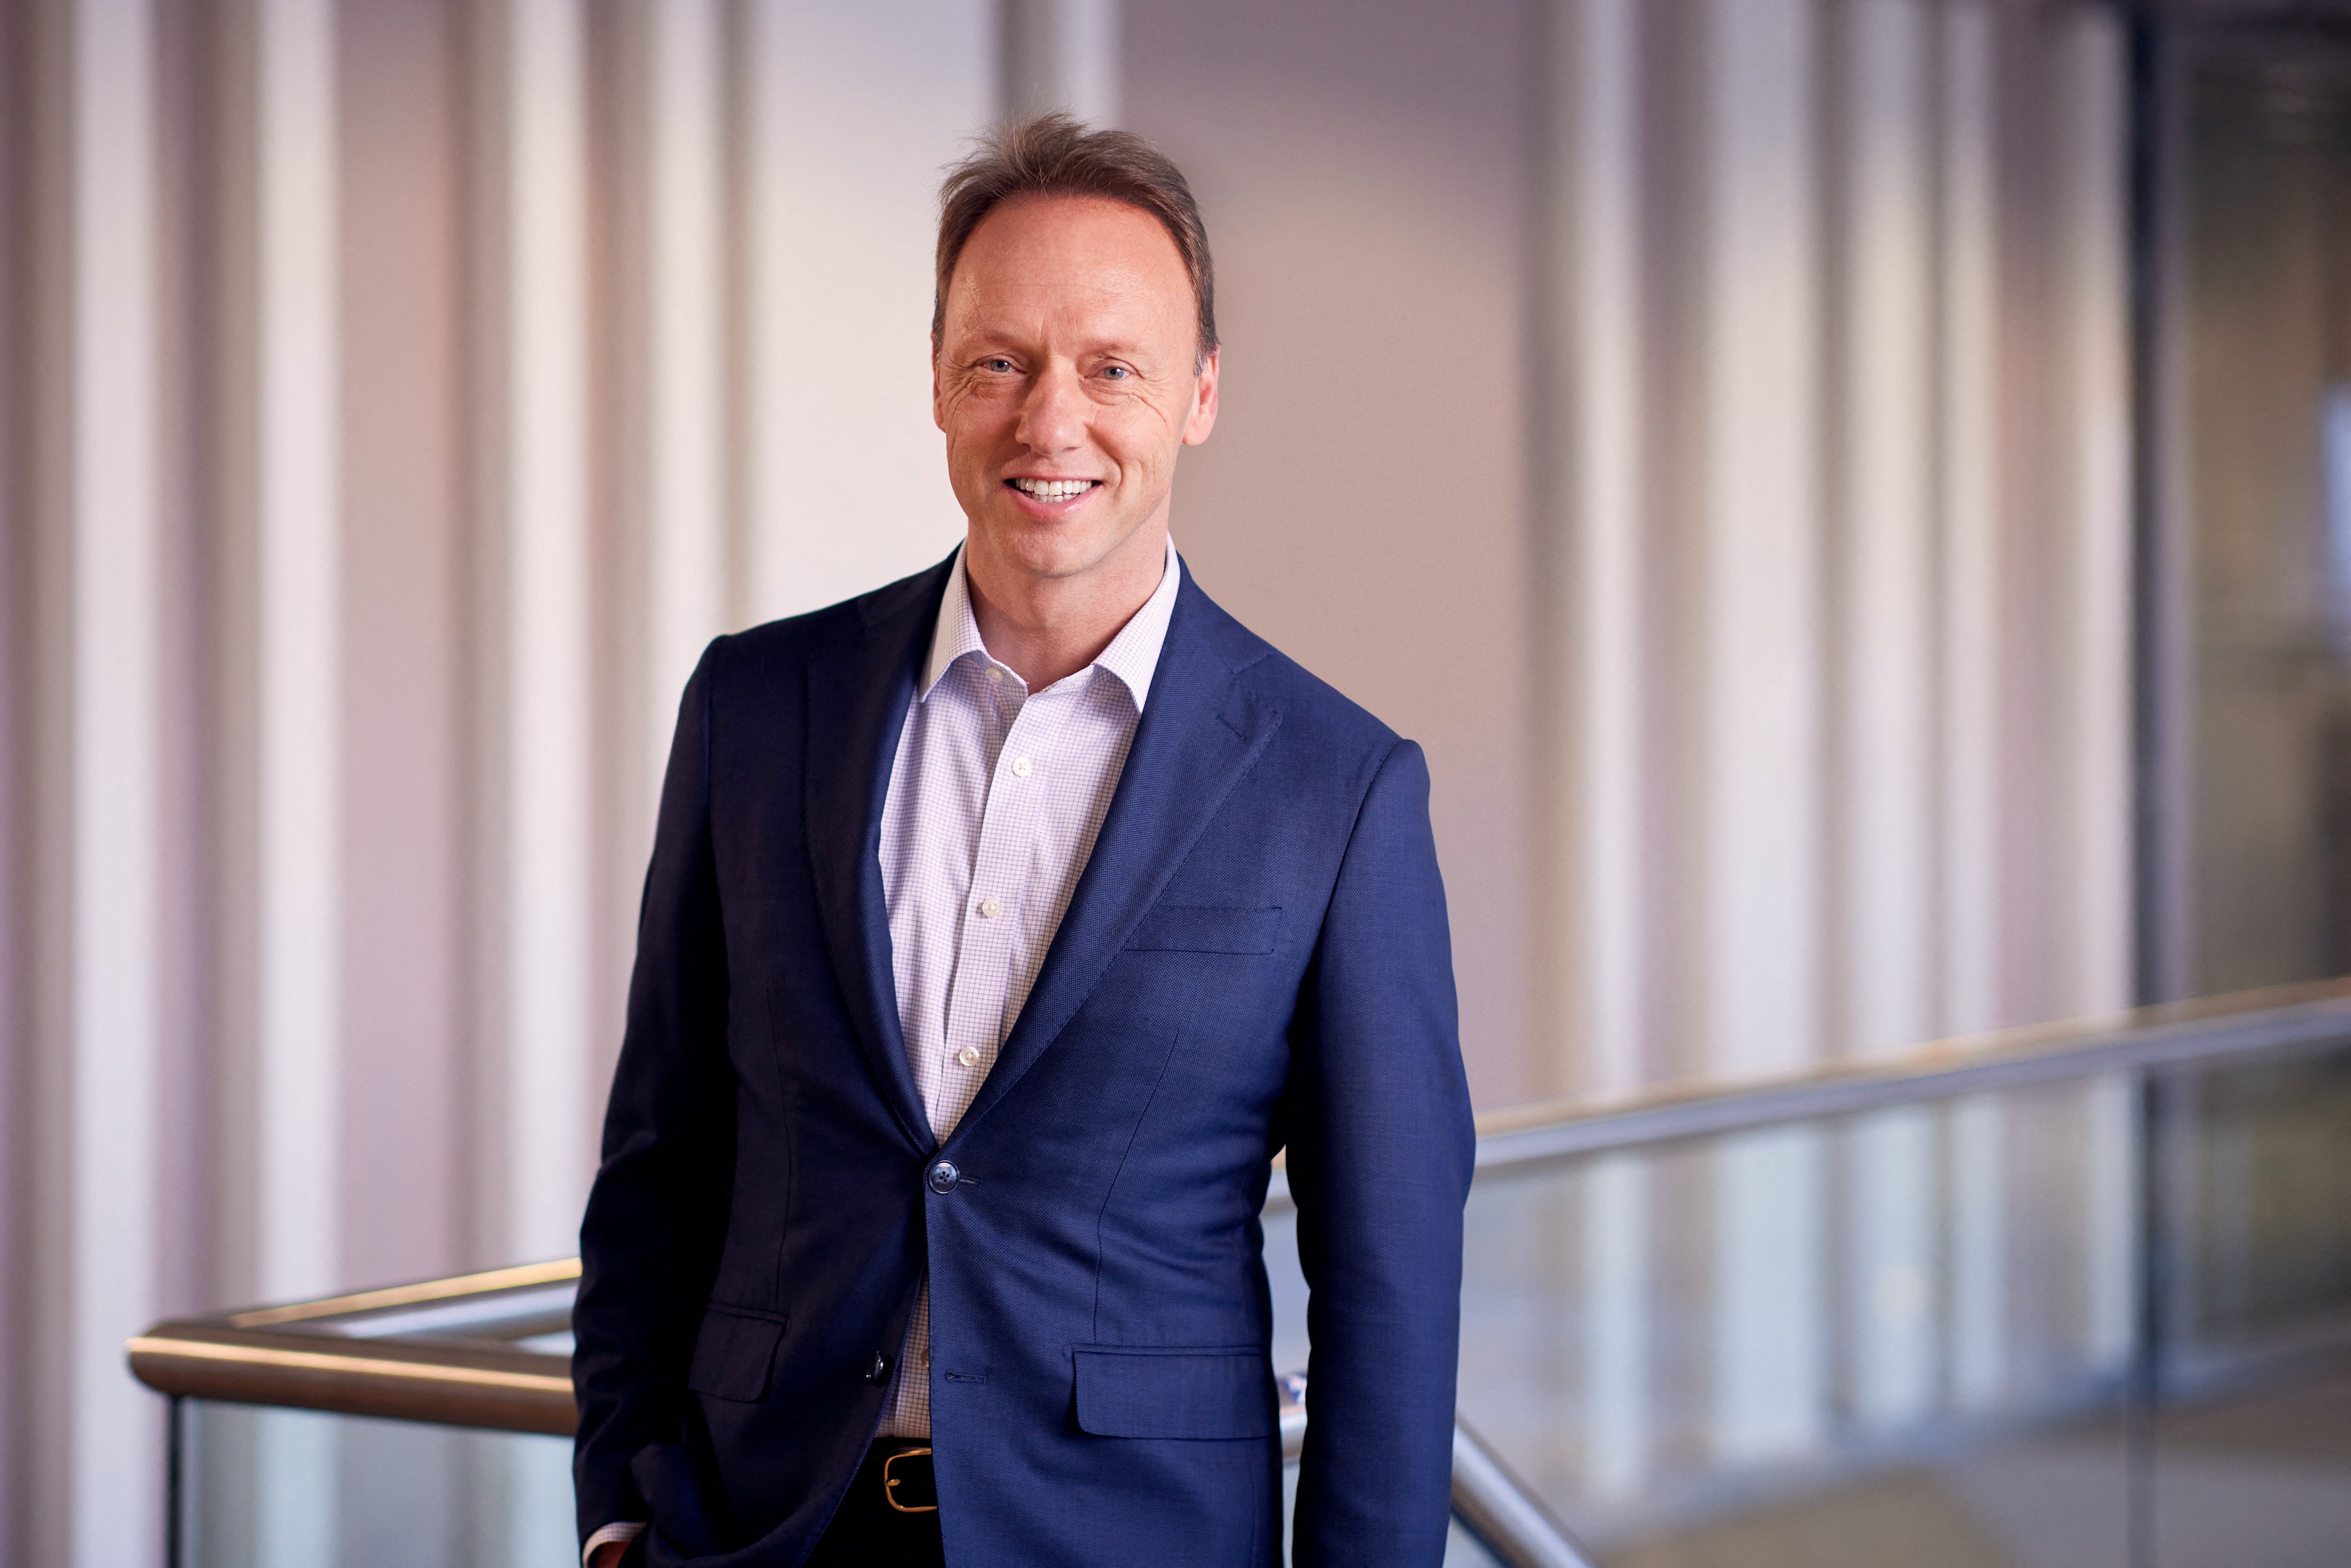 Handout image of new Unilever CEO Hein Schumacher